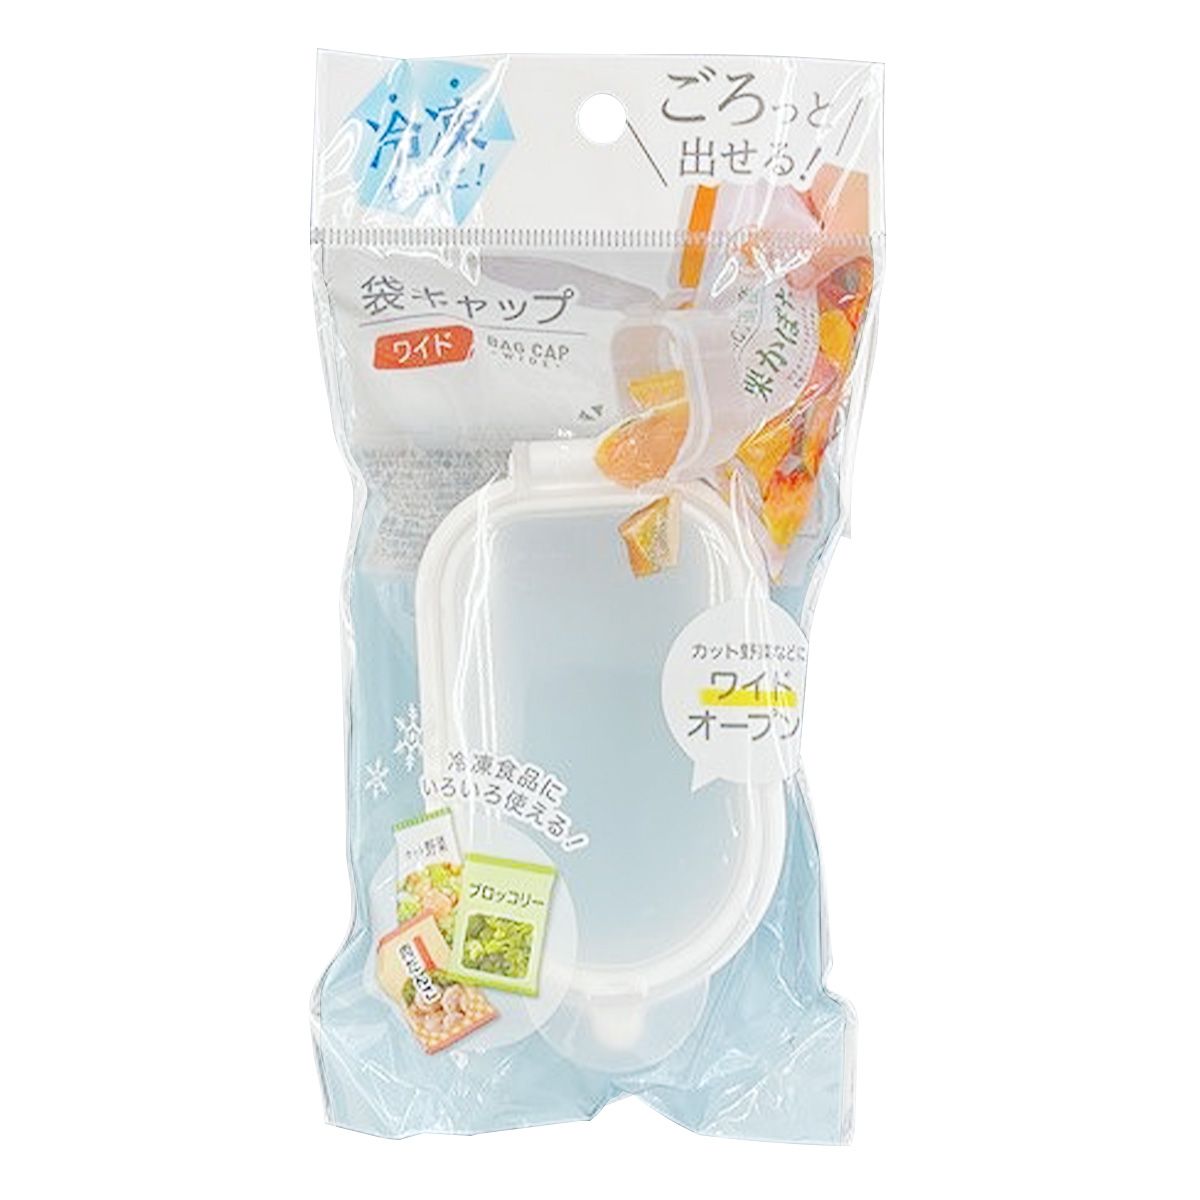 冷凍食品用袋キャップ  ワイド 0459/345893